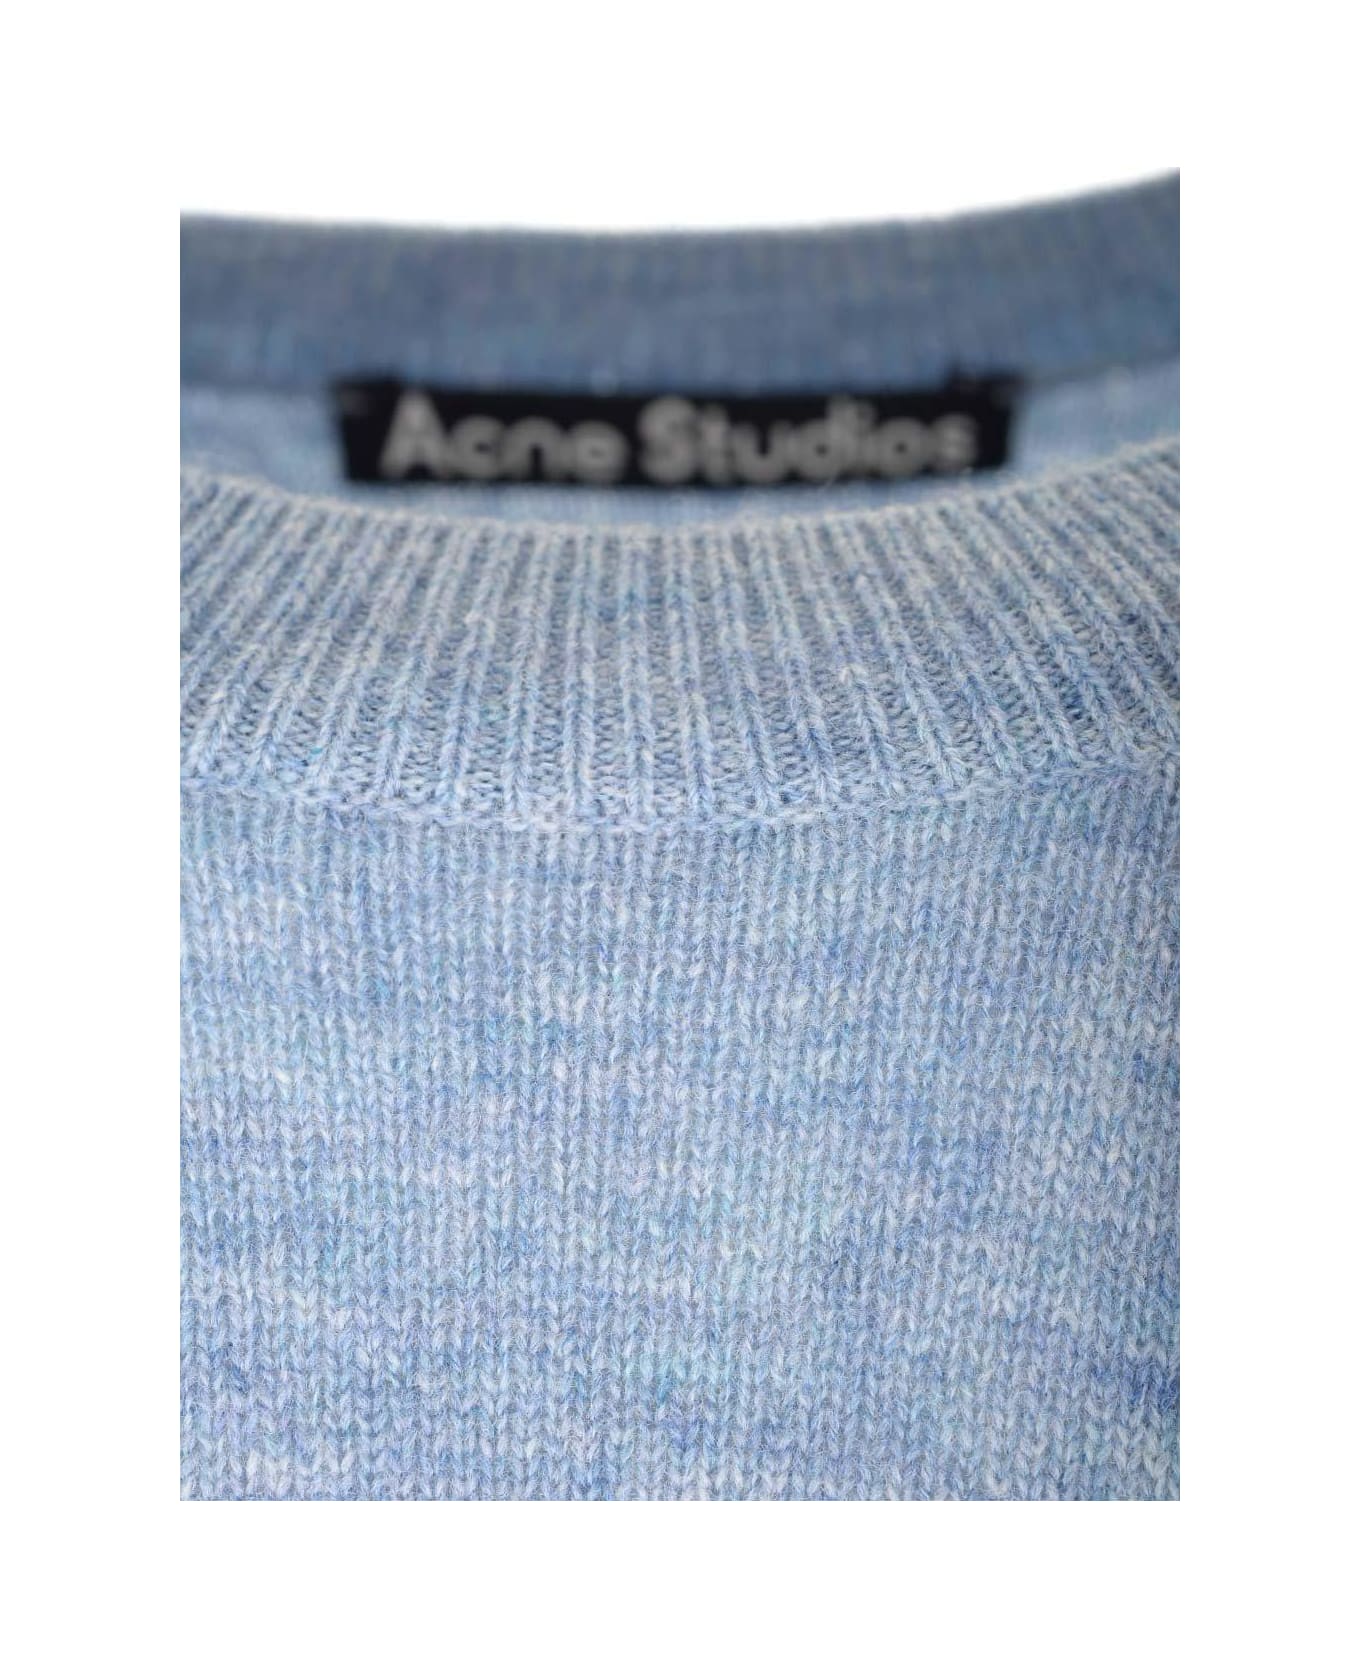 Acne Studios Face Logo Patch Crewneck Sweater - Blue